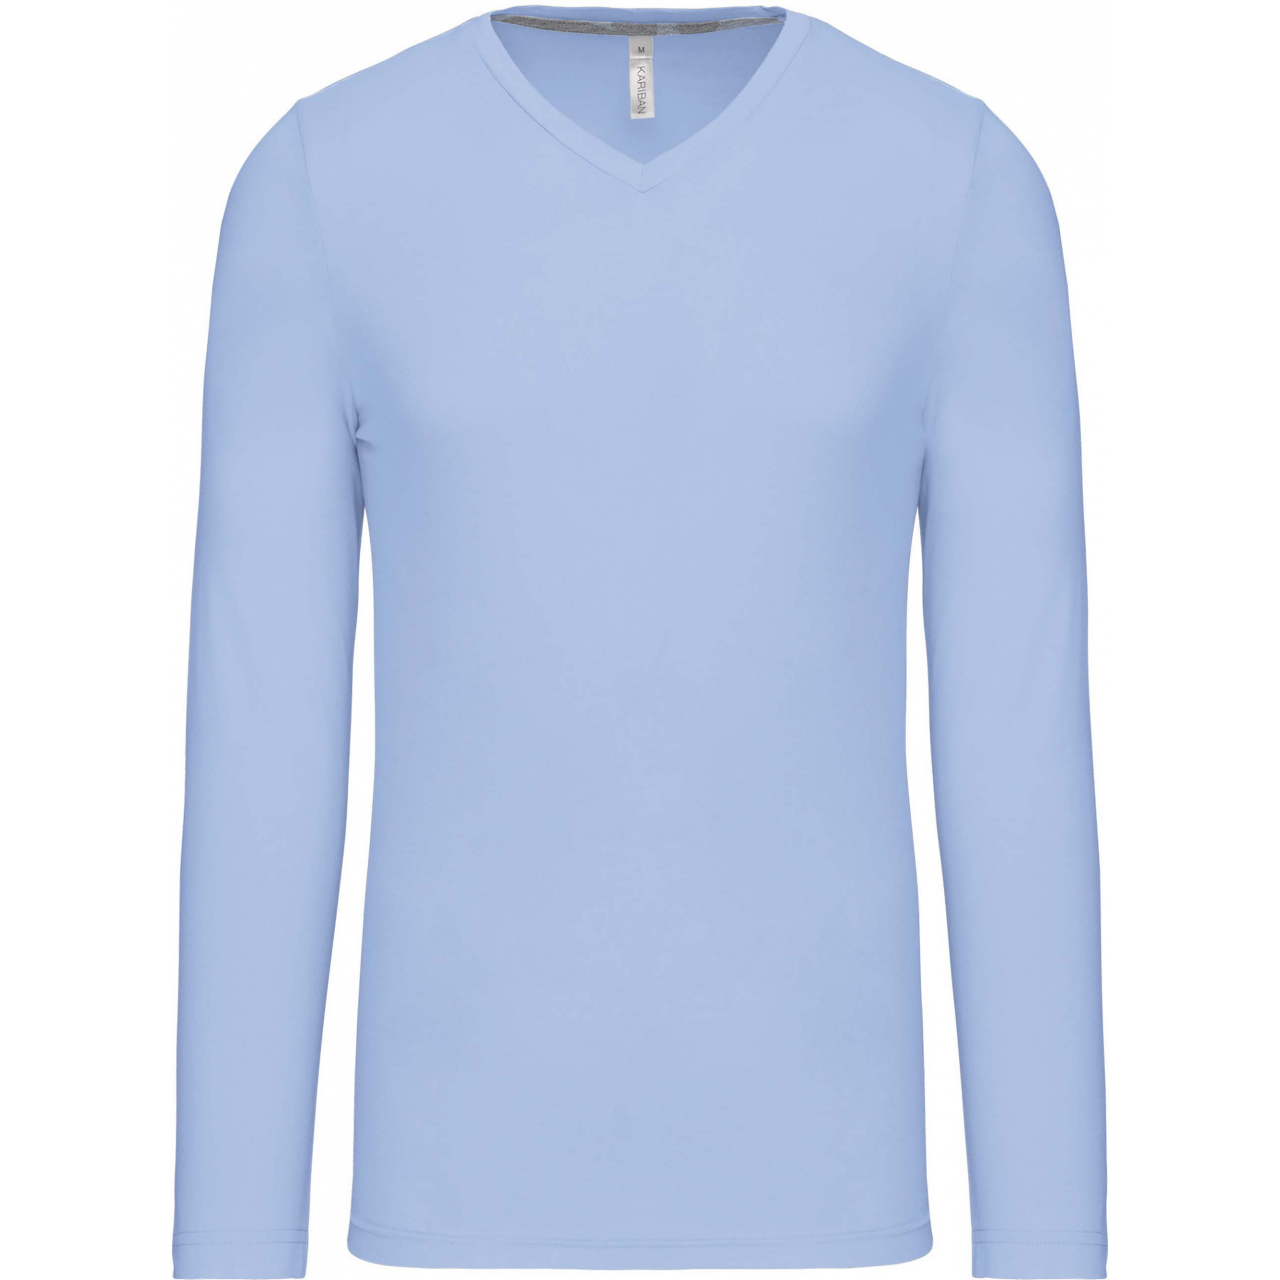 Pánské tričko Kariban dlouhý rukáv V-neck - světle modré, XL